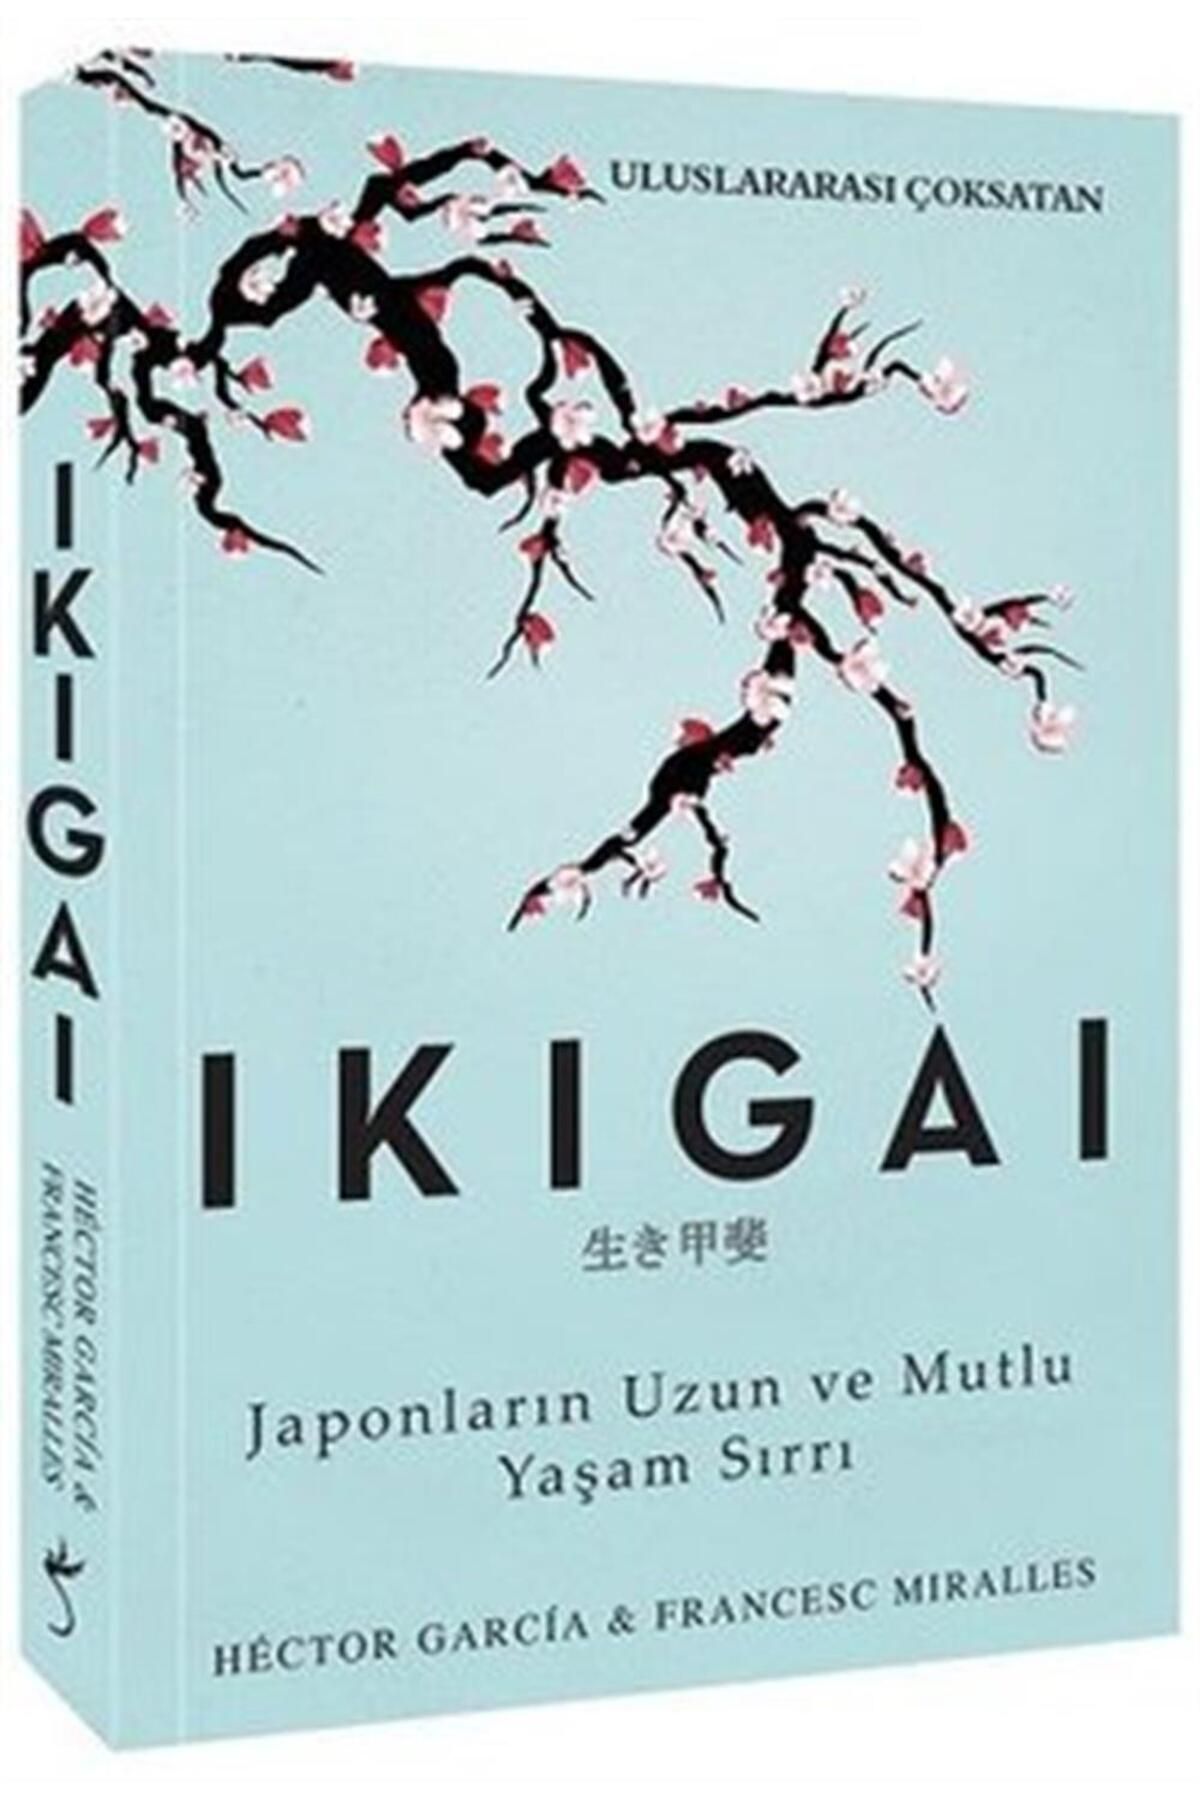 İndigo Kitap Ikıgaı & Japonların Uzun Ve Mutlu Yaşam Sırrı